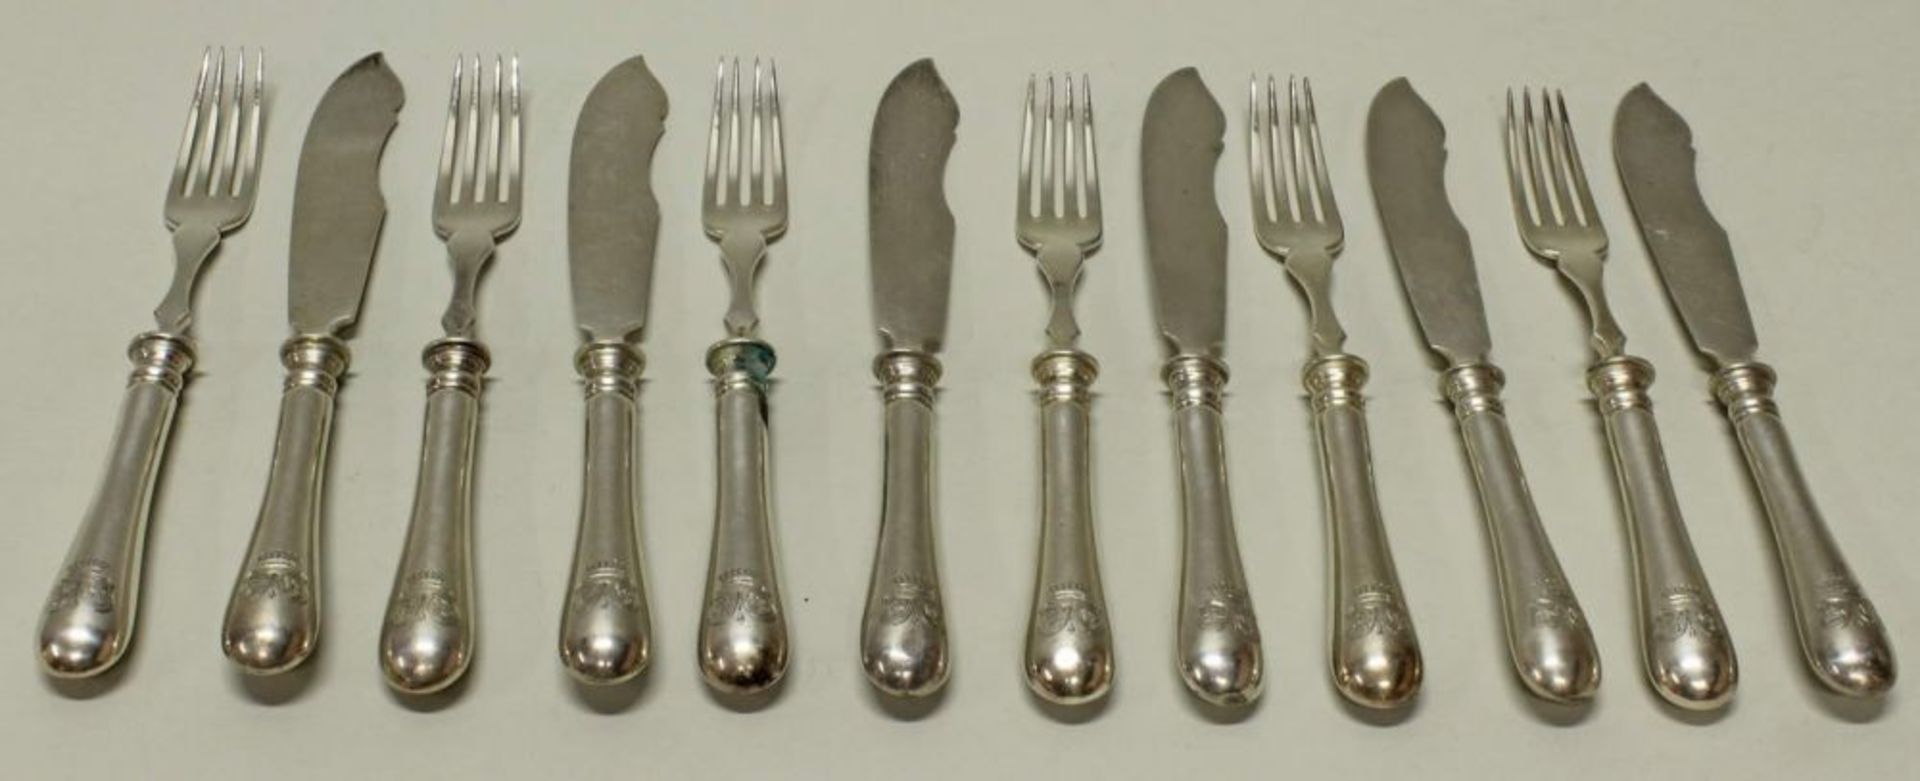 Reserve: 200 EUR        6 Gabeln und 6 Messer, Silber 800, Ende 19. Jh., Bruckmann, graviertes - Image 2 of 2